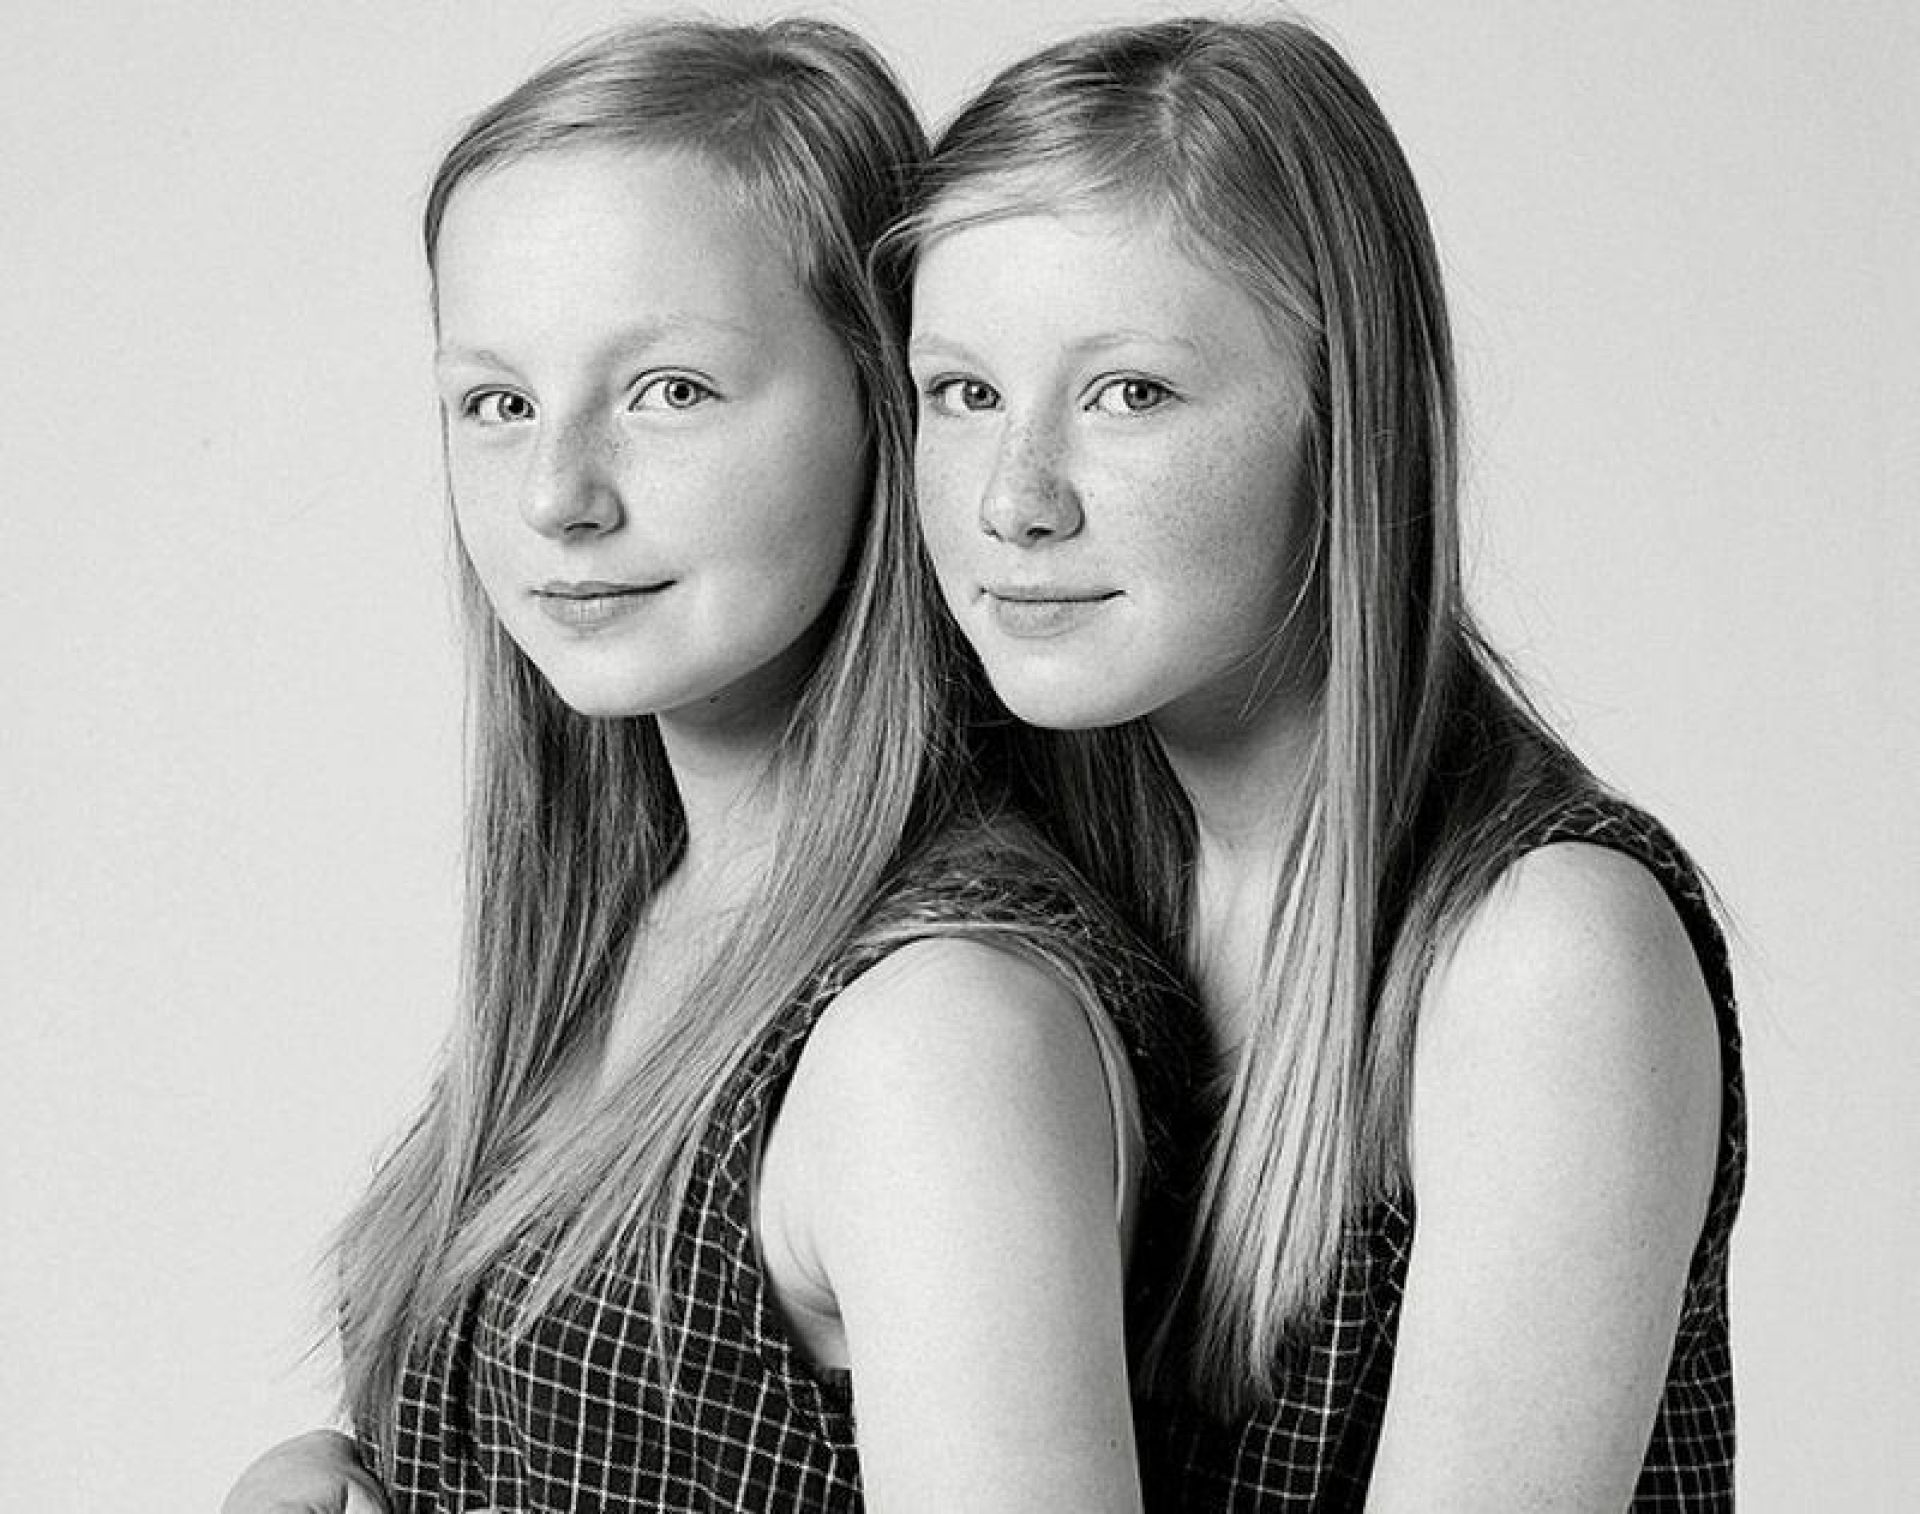 19 год близнецы. Франсуа Брюнель мы не Близнецы. Девушки похожие друг на друга. Одинаковые лица. Близняшки люди.